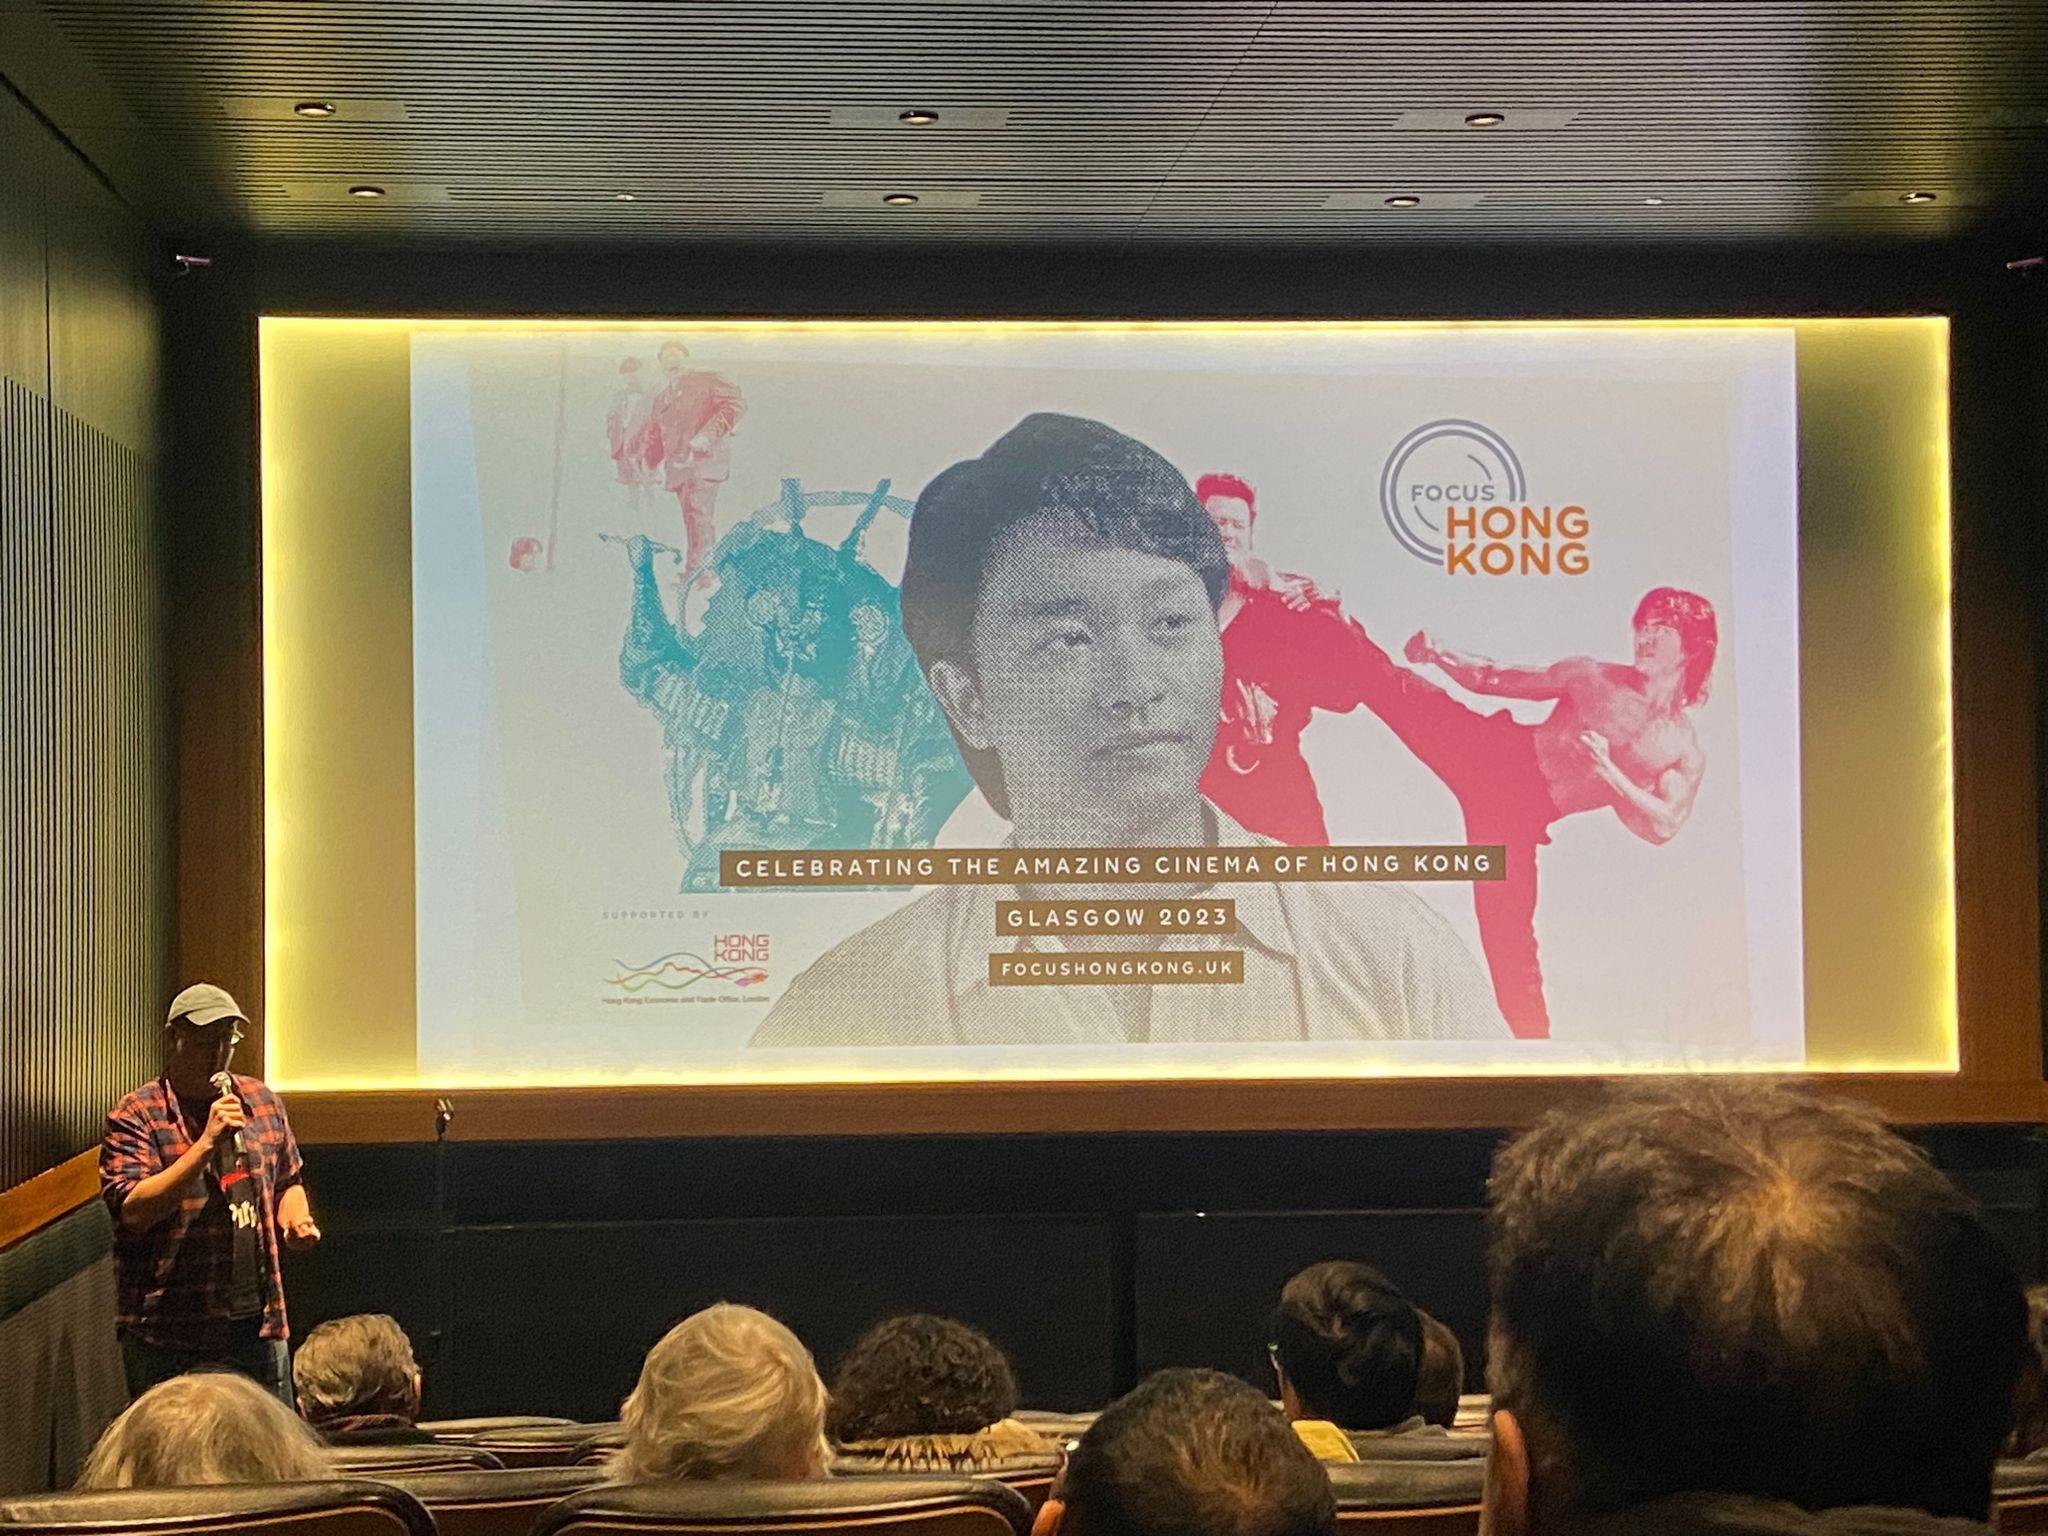 香港駐倫敦經濟貿易辦事處與《香港專輯》合作，於十二月二日至四日（倫敦時間）在英國蘇格蘭格拉斯哥電影院放映精選香港電影。圖示《香港專輯》協辦人James Mudge 向觀眾介紹電影《冬未來》。